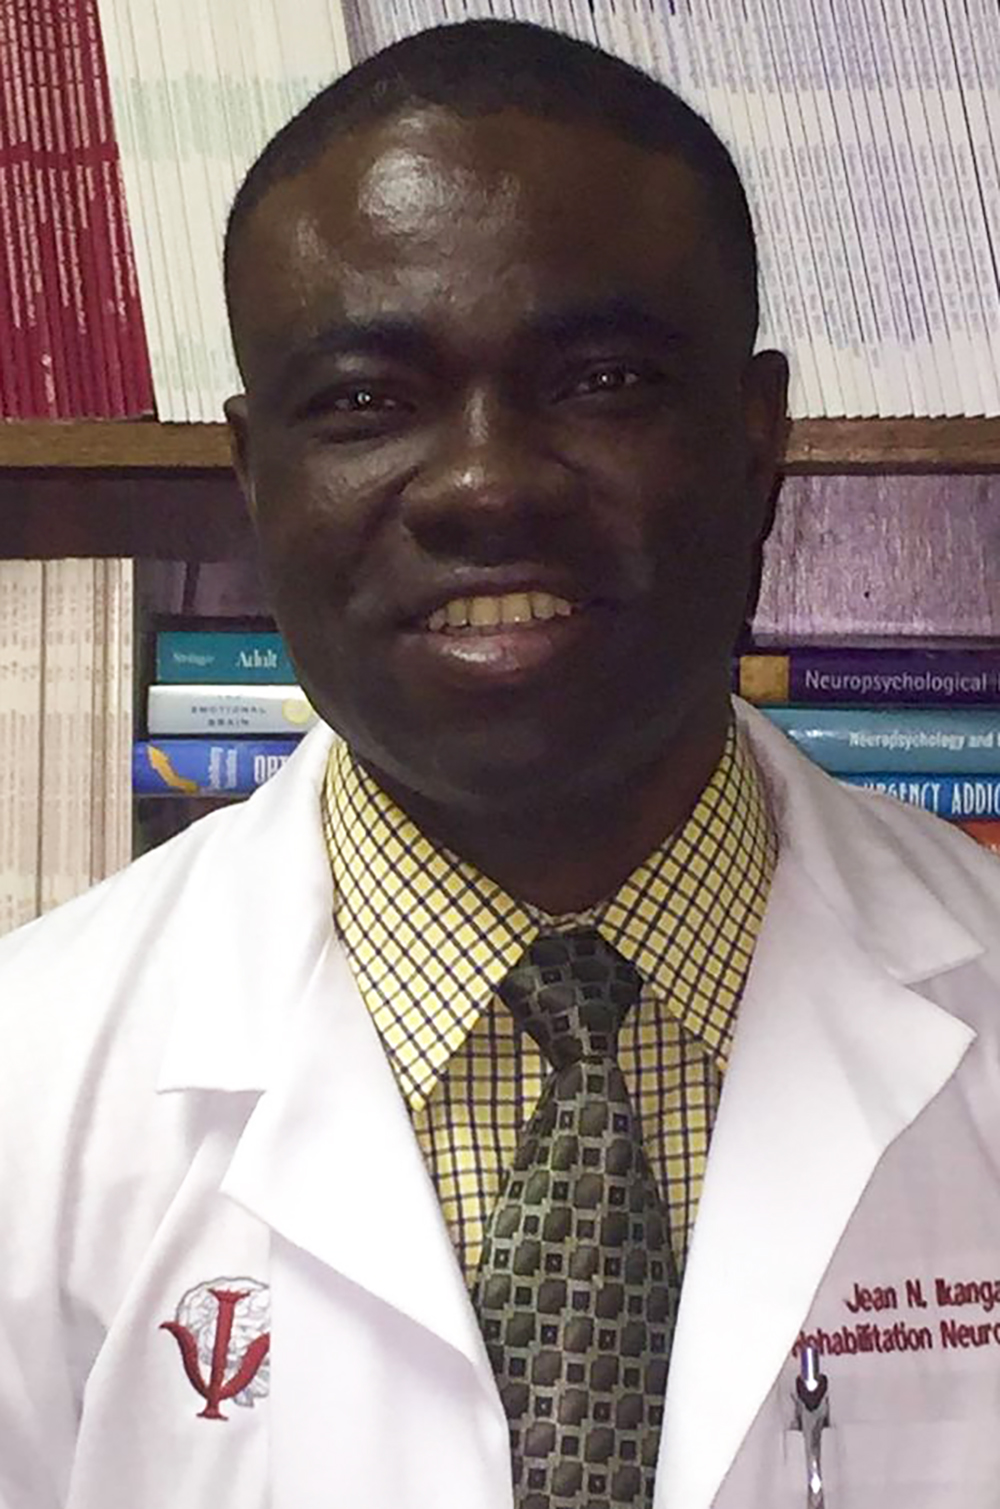 Dr. Jean Ikanga